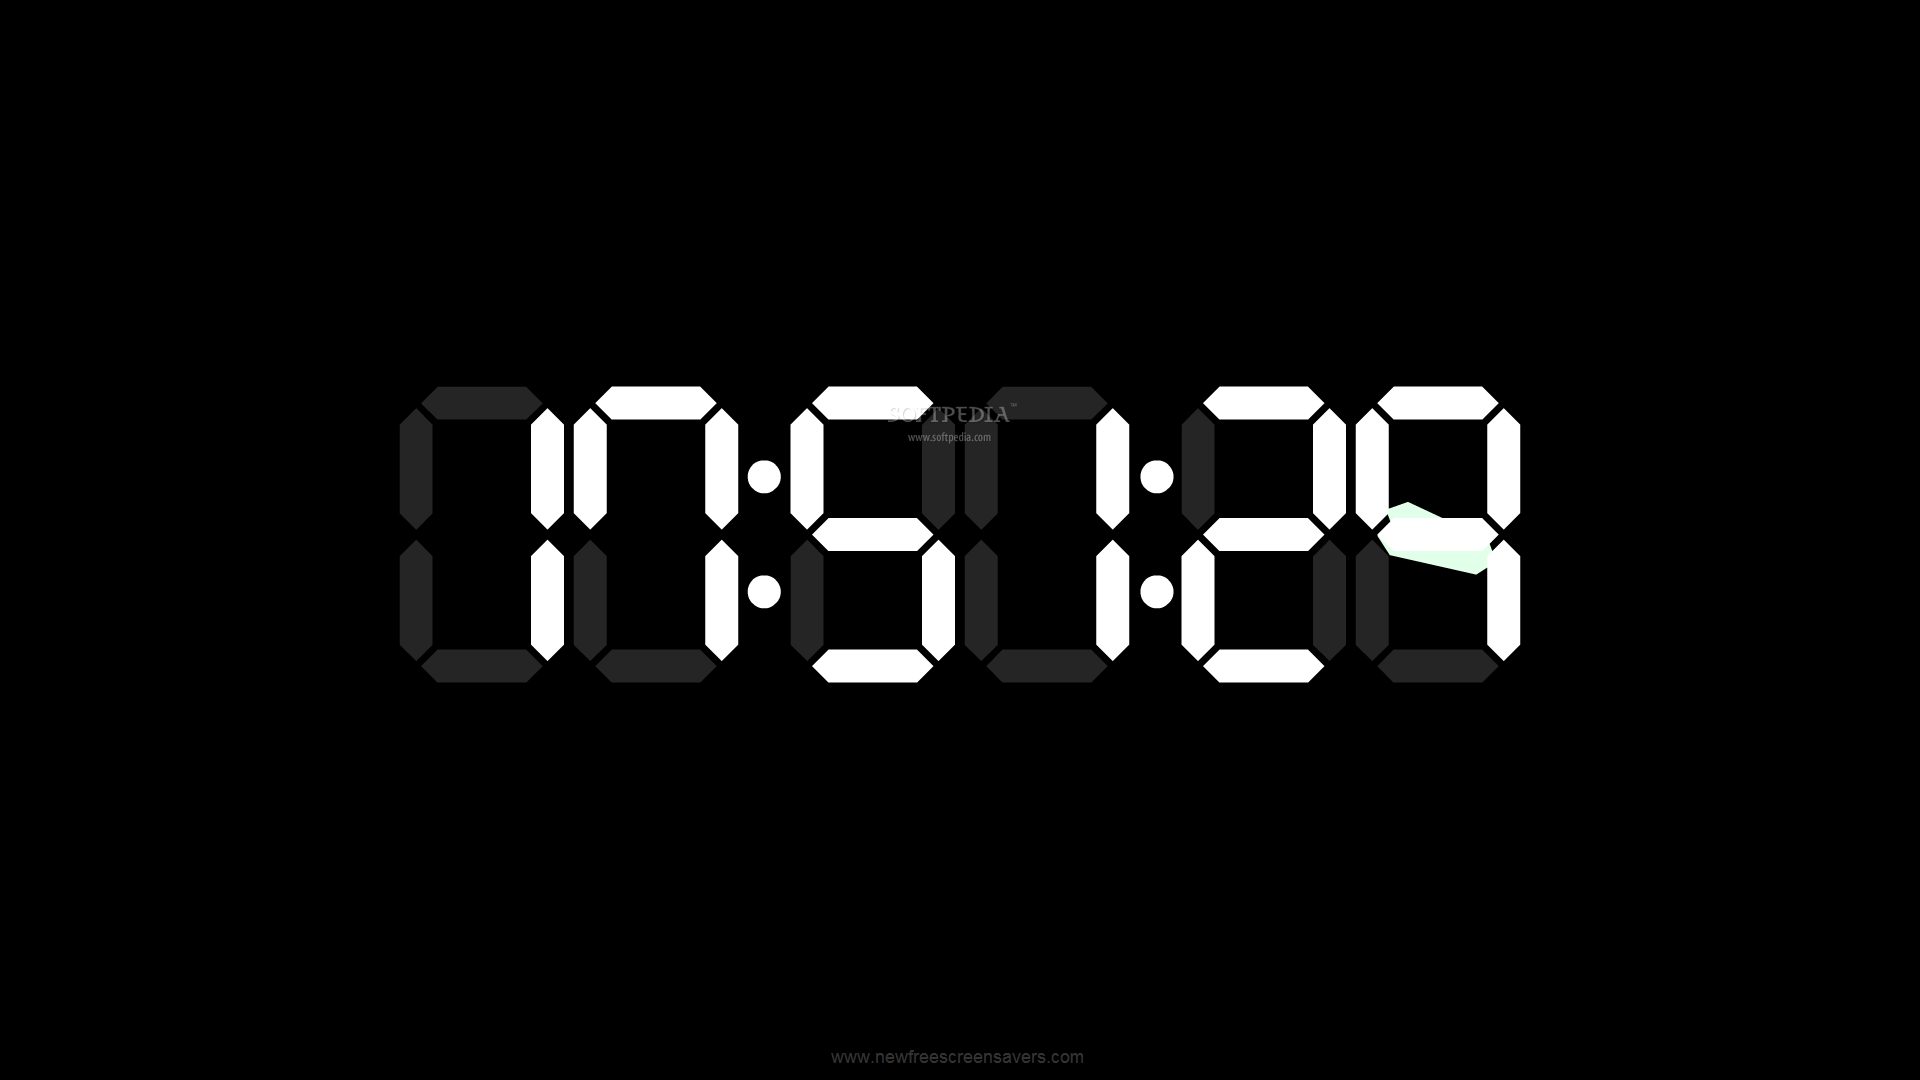 Большие цифры на экране. Часы Digital Clock 200730138828.4. Часы на черном фоне. Заставка часы на экран. Часы на темном фоне.